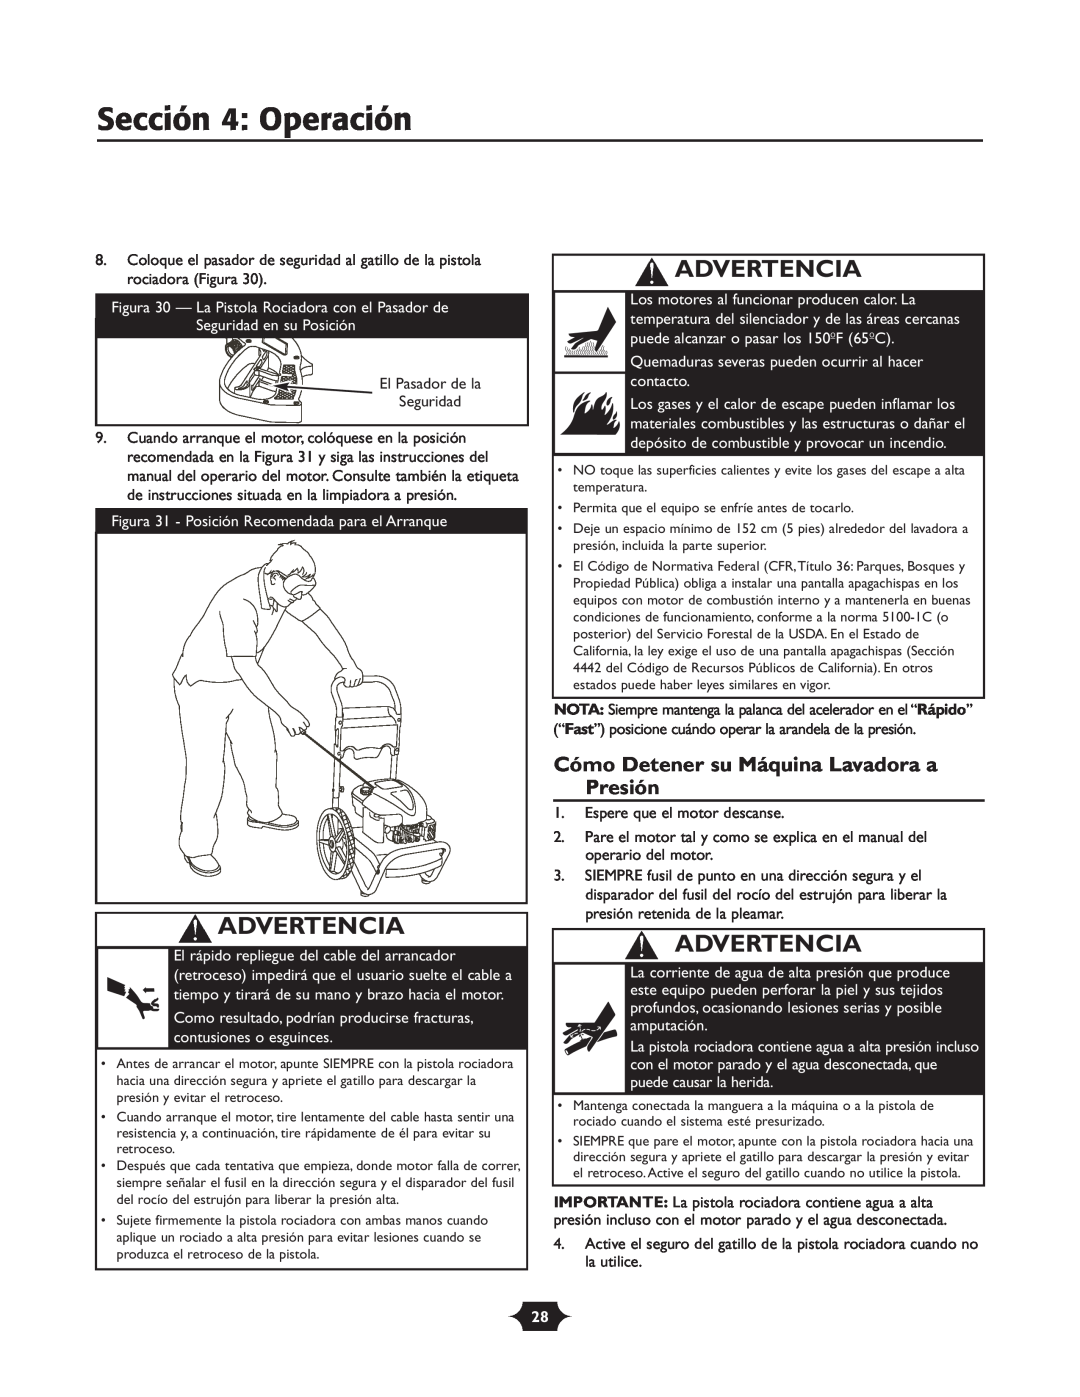 Briggs & Stratton 20270 operating instructions Sección 4 Operación, Cómo Detener su Máquina Lavadora a Presión, Advertencia 